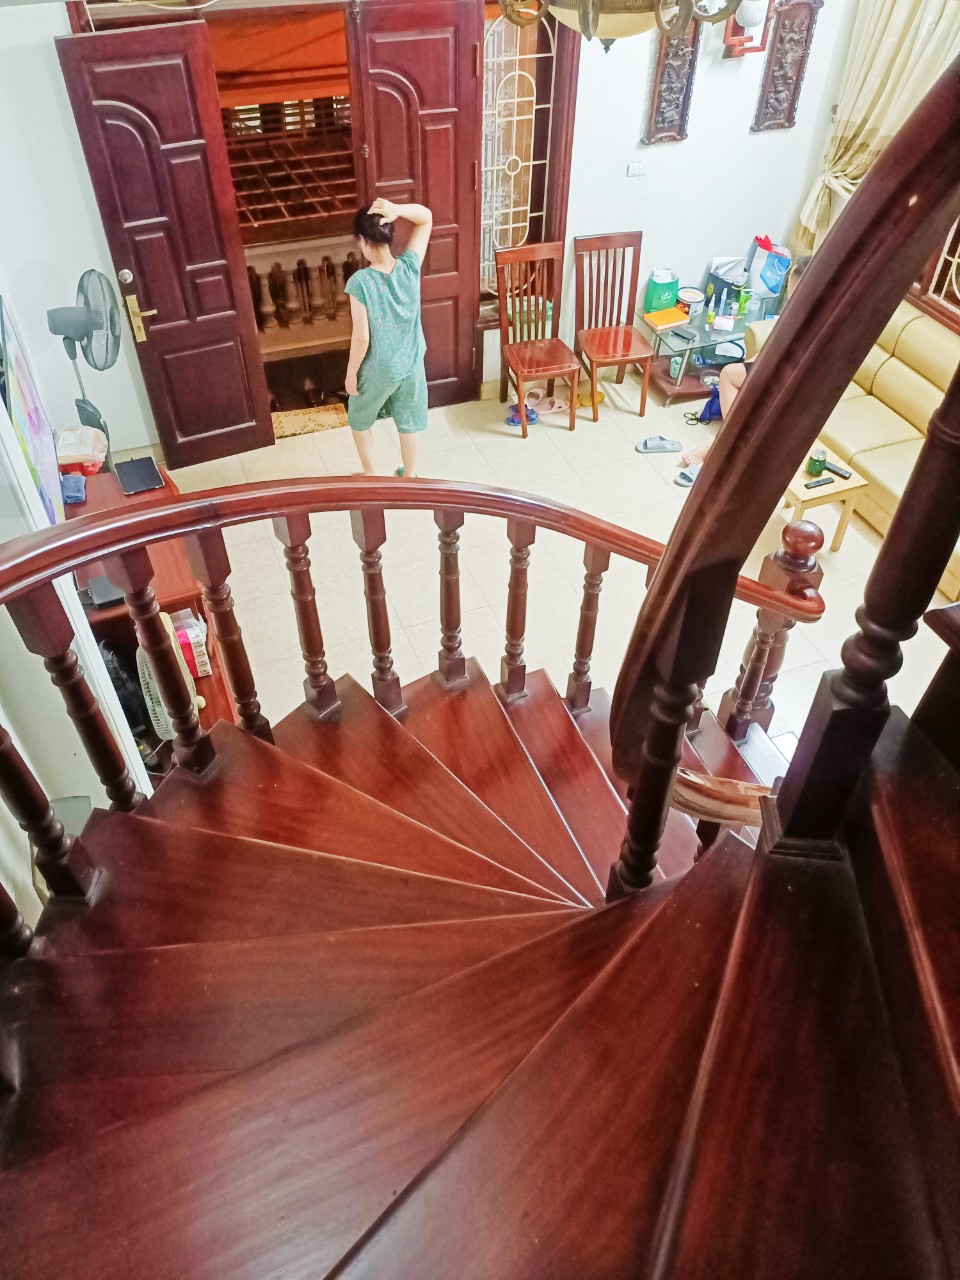 Chính chủ bán nhà kiểu Biệt Thự nhỏ tại Hà Nội 80m2 sổ đỏ 12.5 tỷ. lh:0905861688 - Ảnh 1